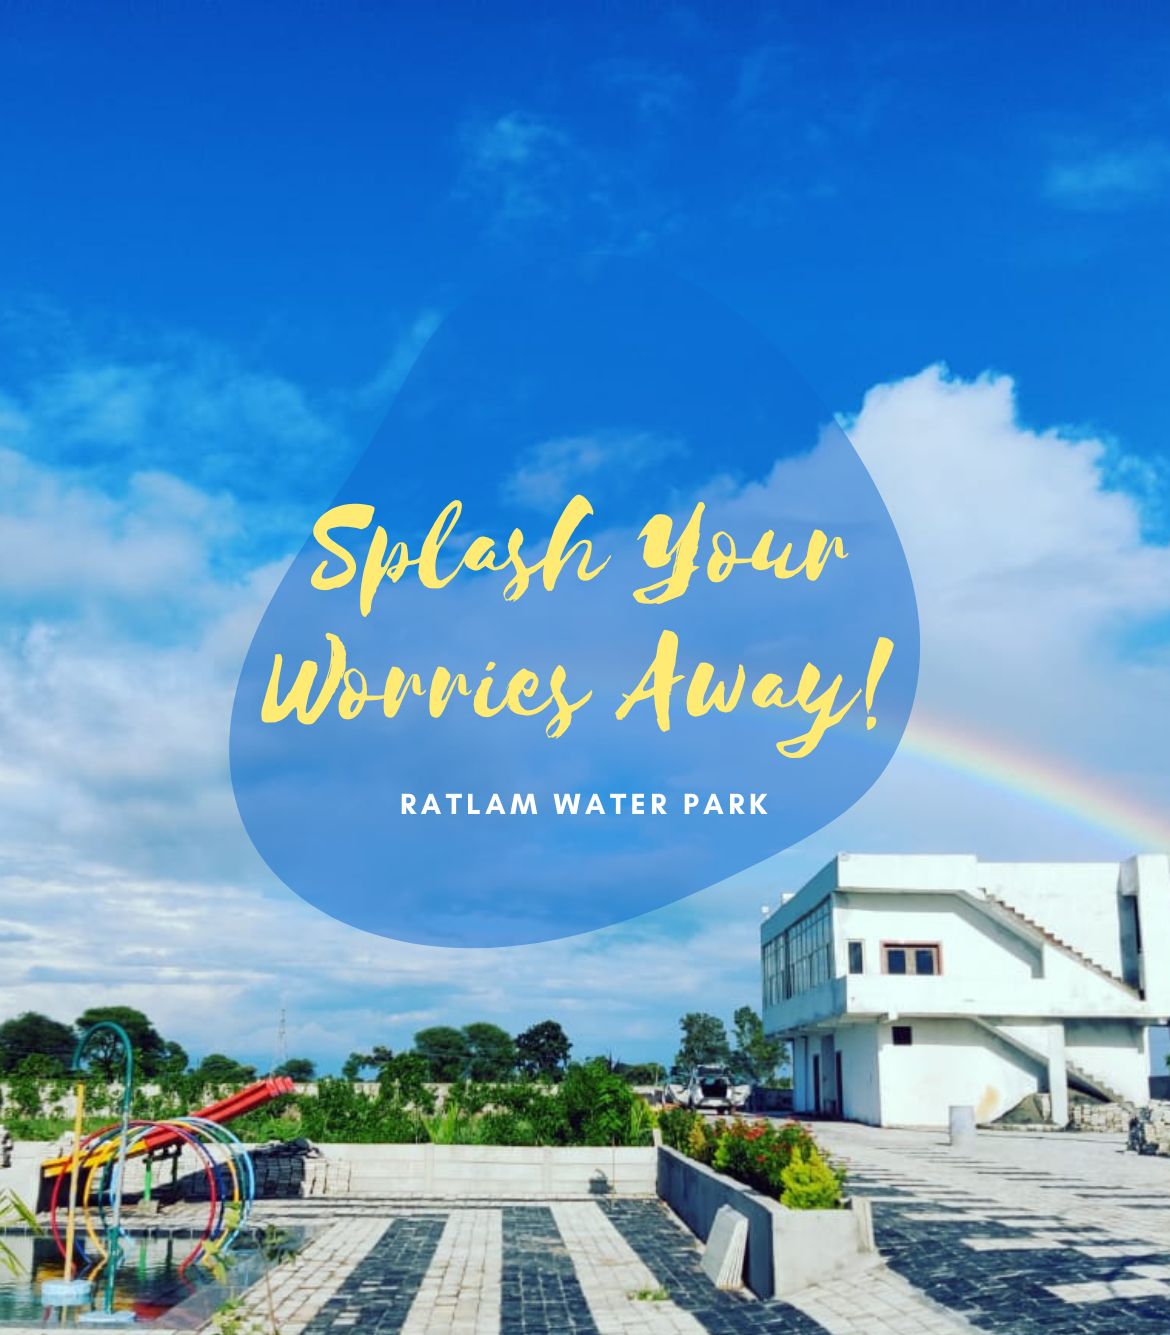 Ratlam Water Park Tickets